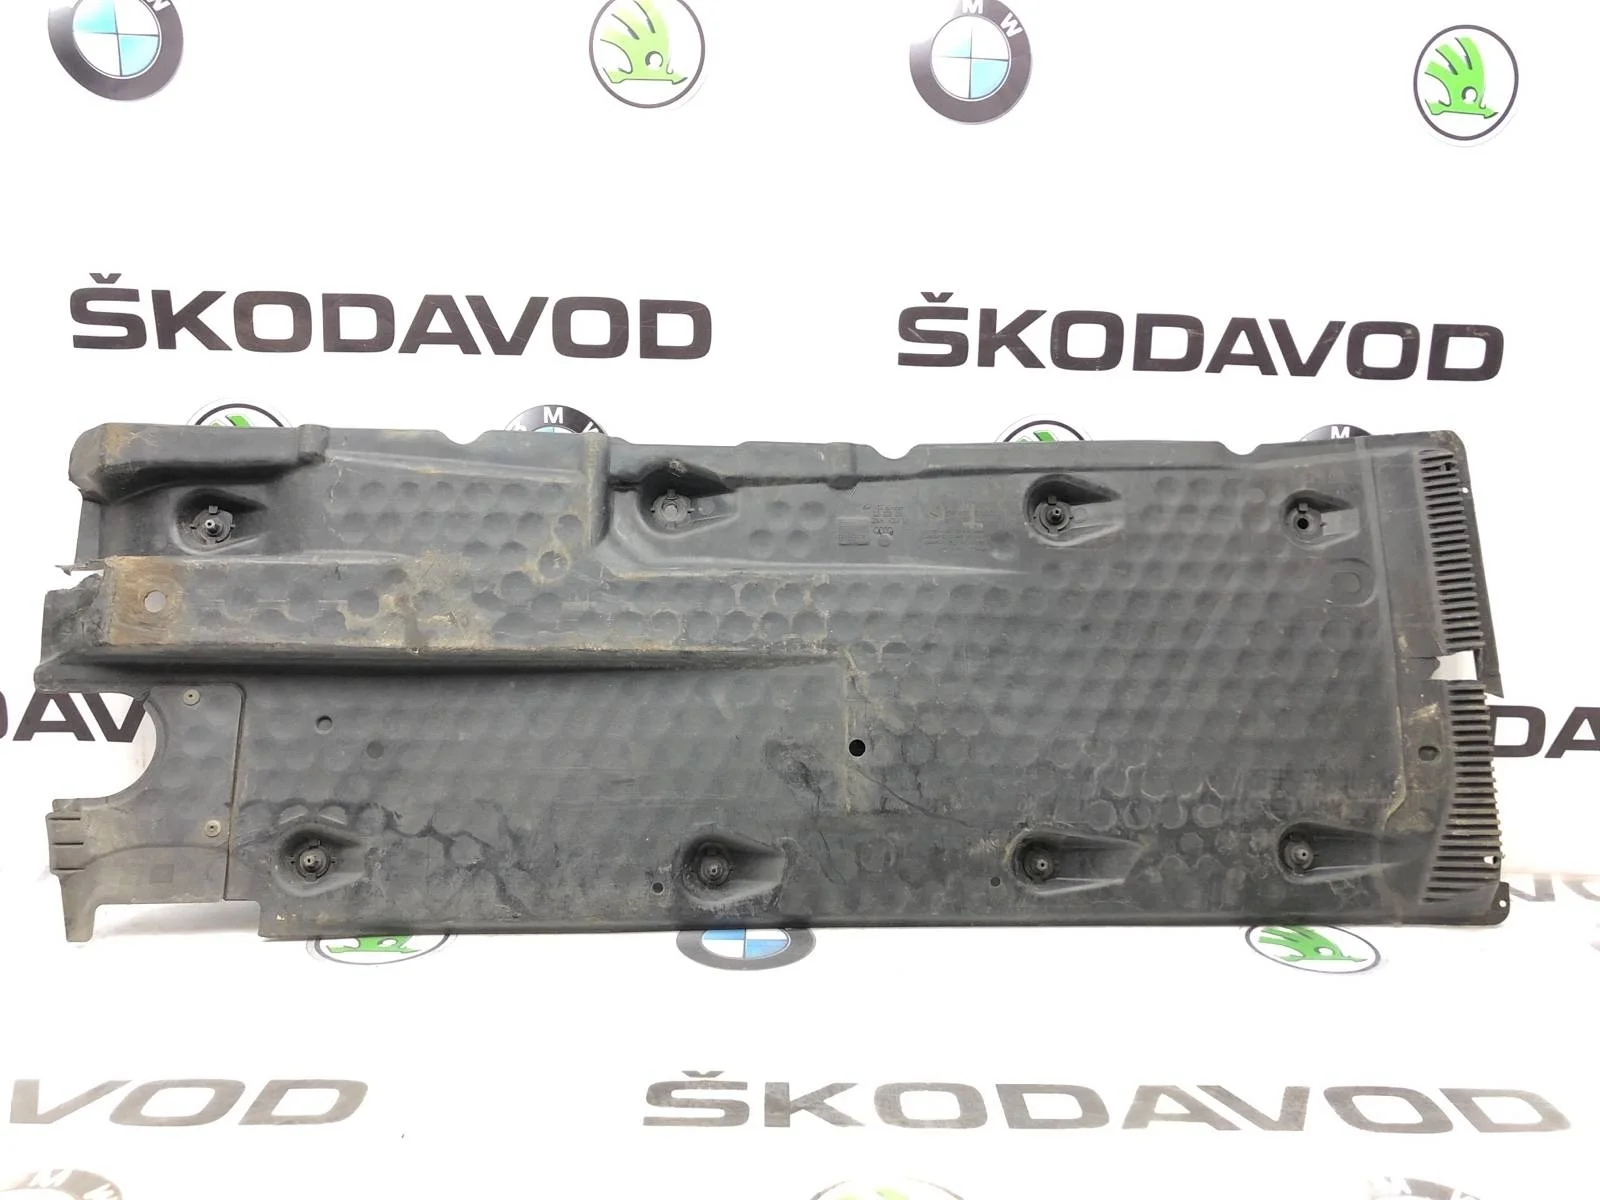 Защита днища Skoda Octavia 2010 1K0825212 A5 (1Z) 1.8 CDAB, правая